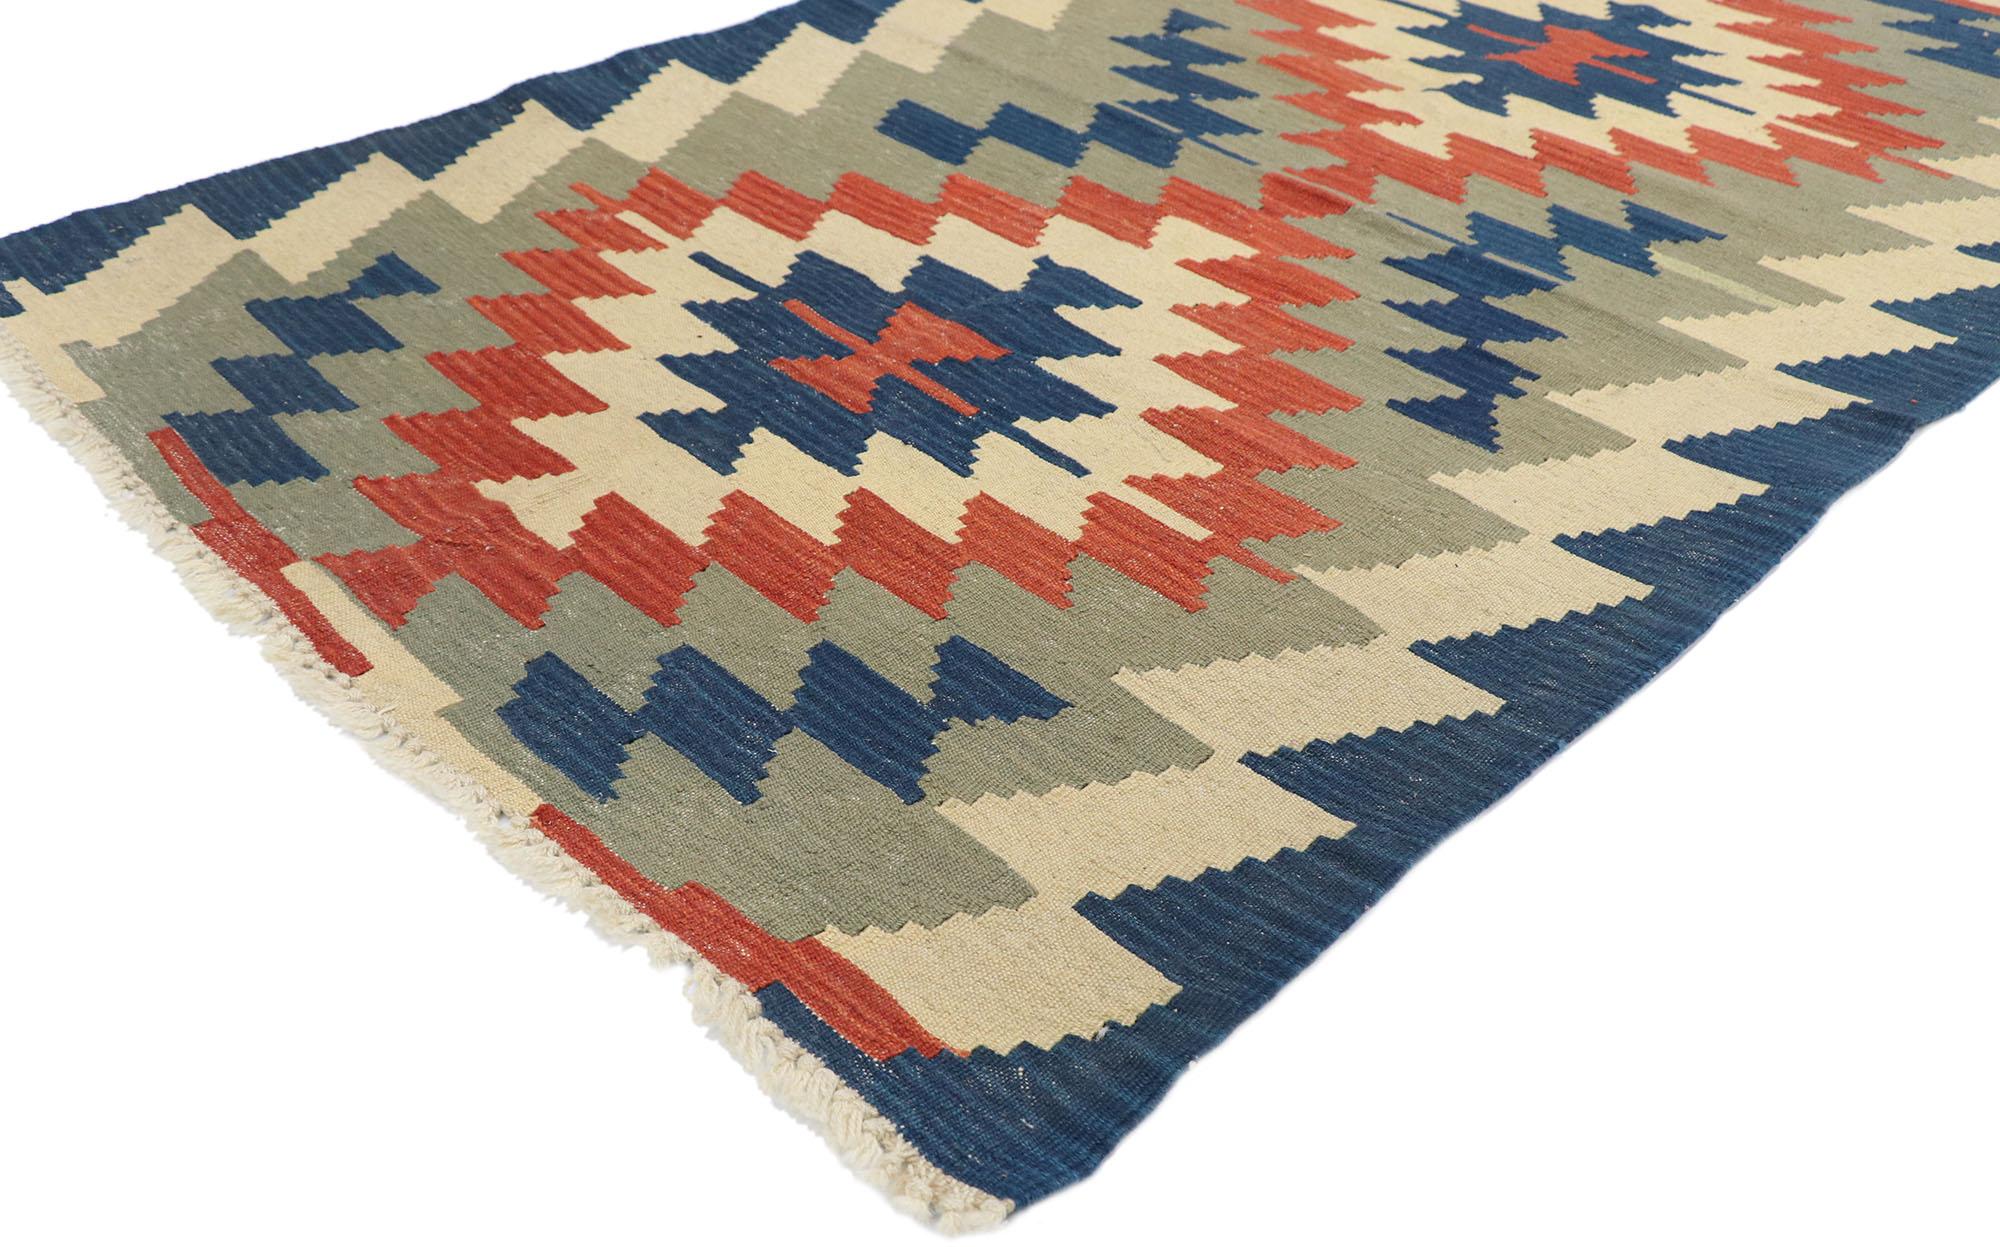 77830 Vintage Persisch Shiraz Kilim Teppich mit Tribal Stil 03'08 x 05'08. Voller winziger Details und einem kühnen, ausdrucksstarken Design, kombiniert mit leuchtenden Farben und einem Tribal-Stil, ist dieser handgewebte, alte persische